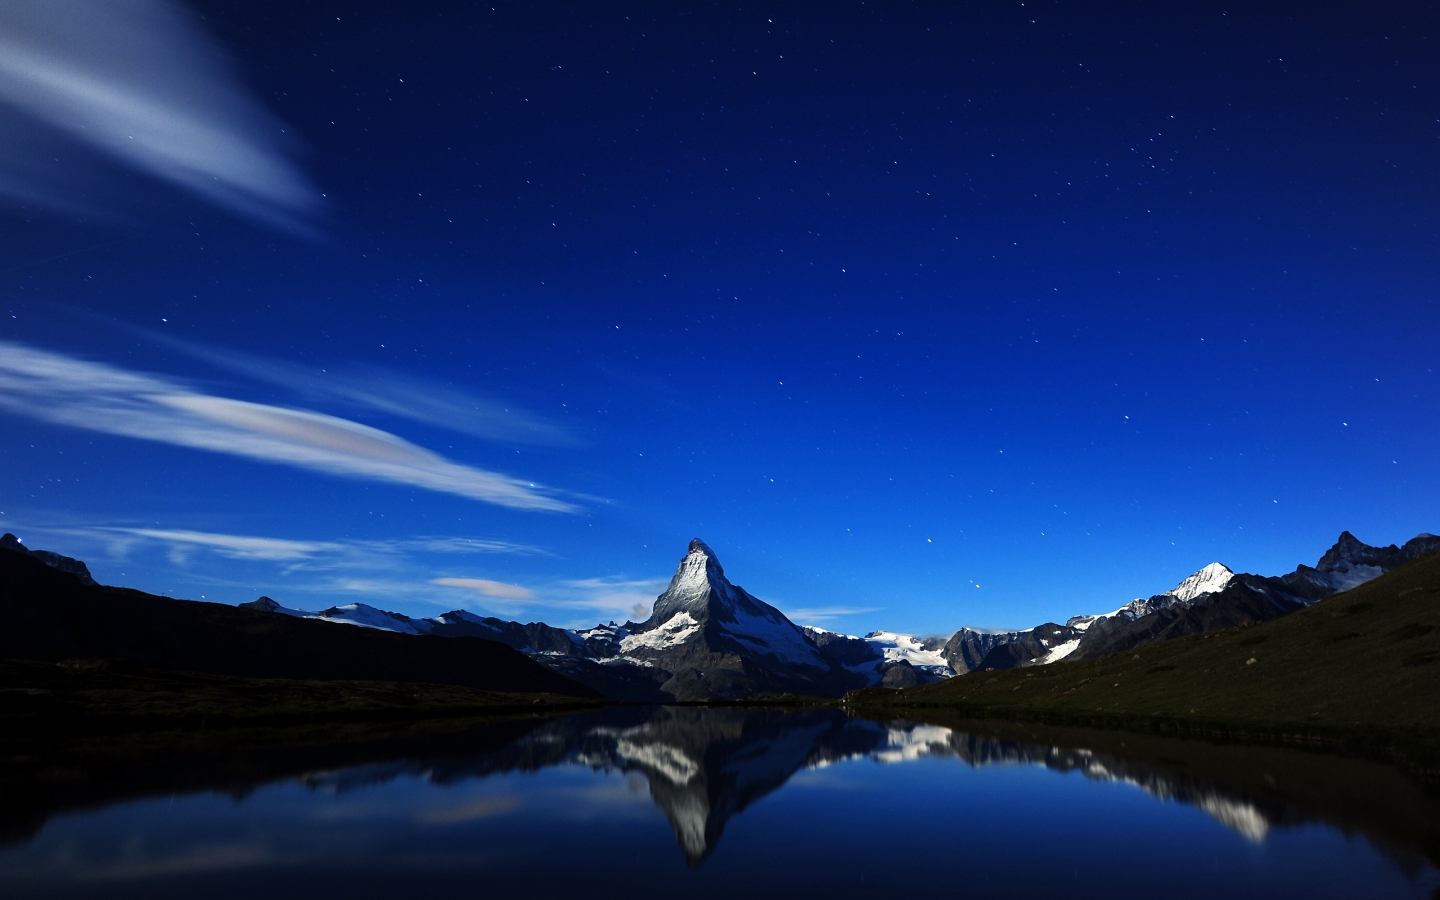 Matterhorn Midnight Reflection for 1440 x 900 widescreen resolution